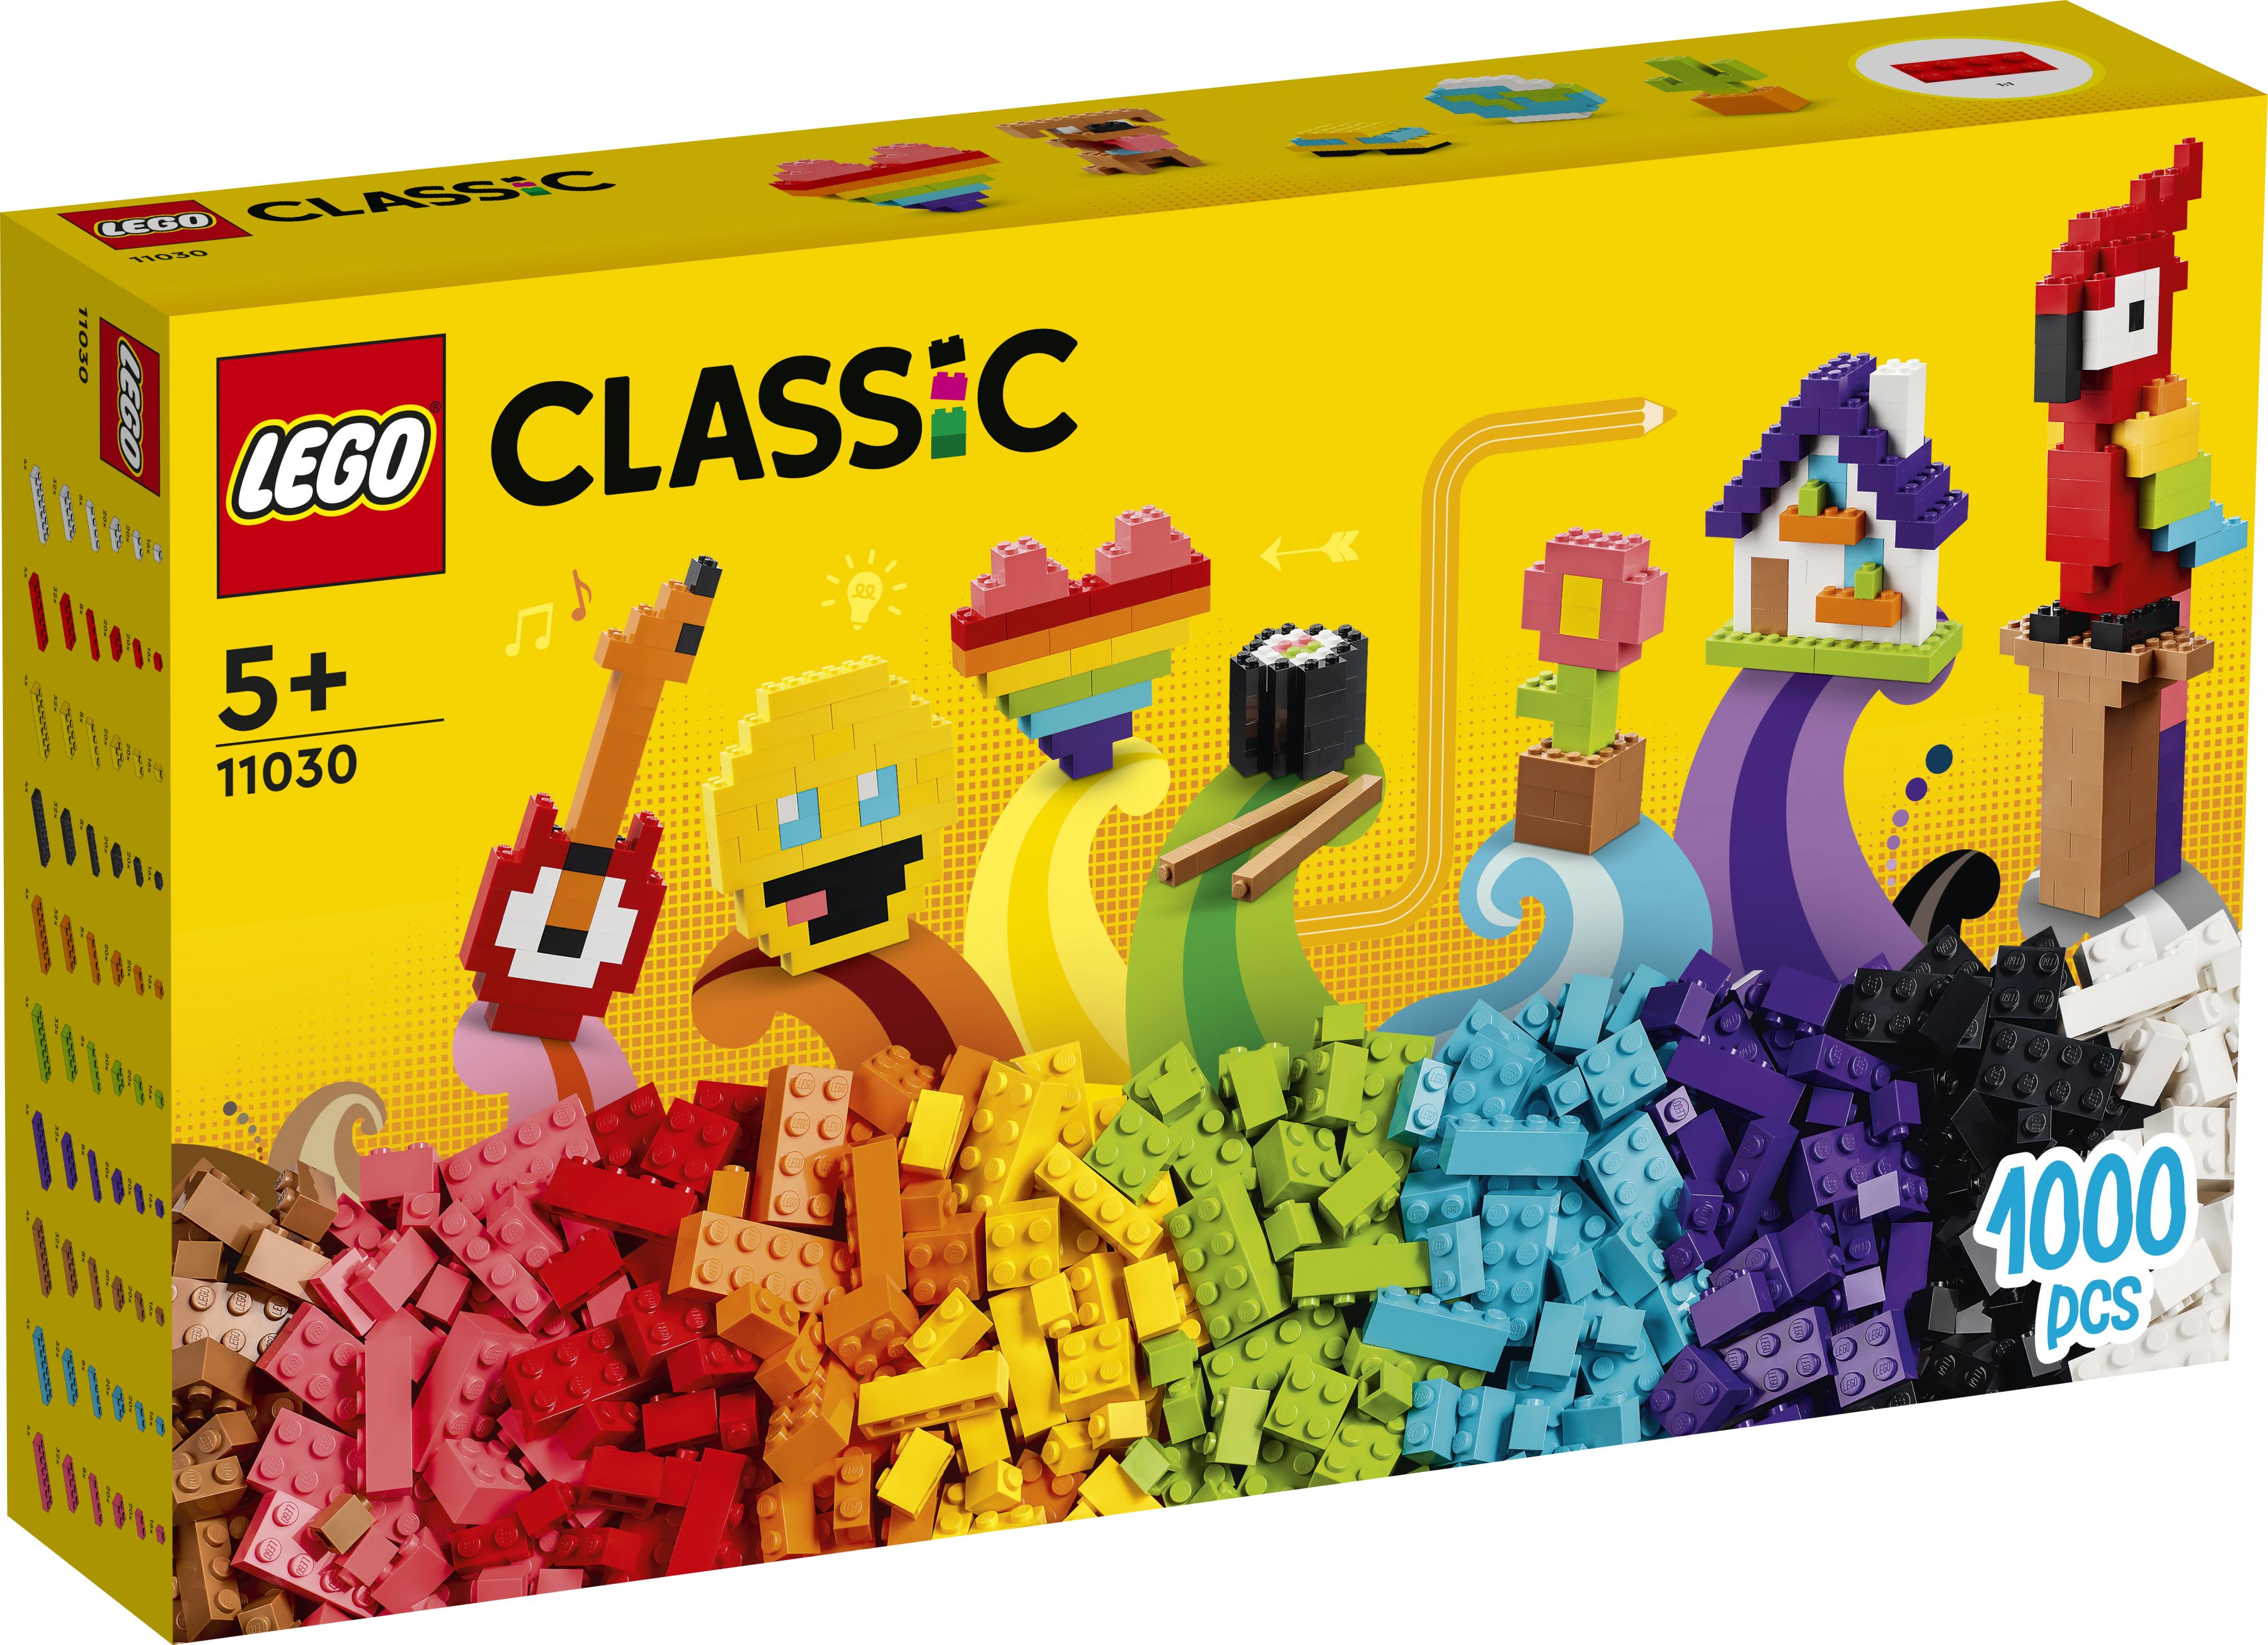 LEGO Classic 11030 Großes Kreativ-Bauset LEGO_11030_Box1_v29.jpg